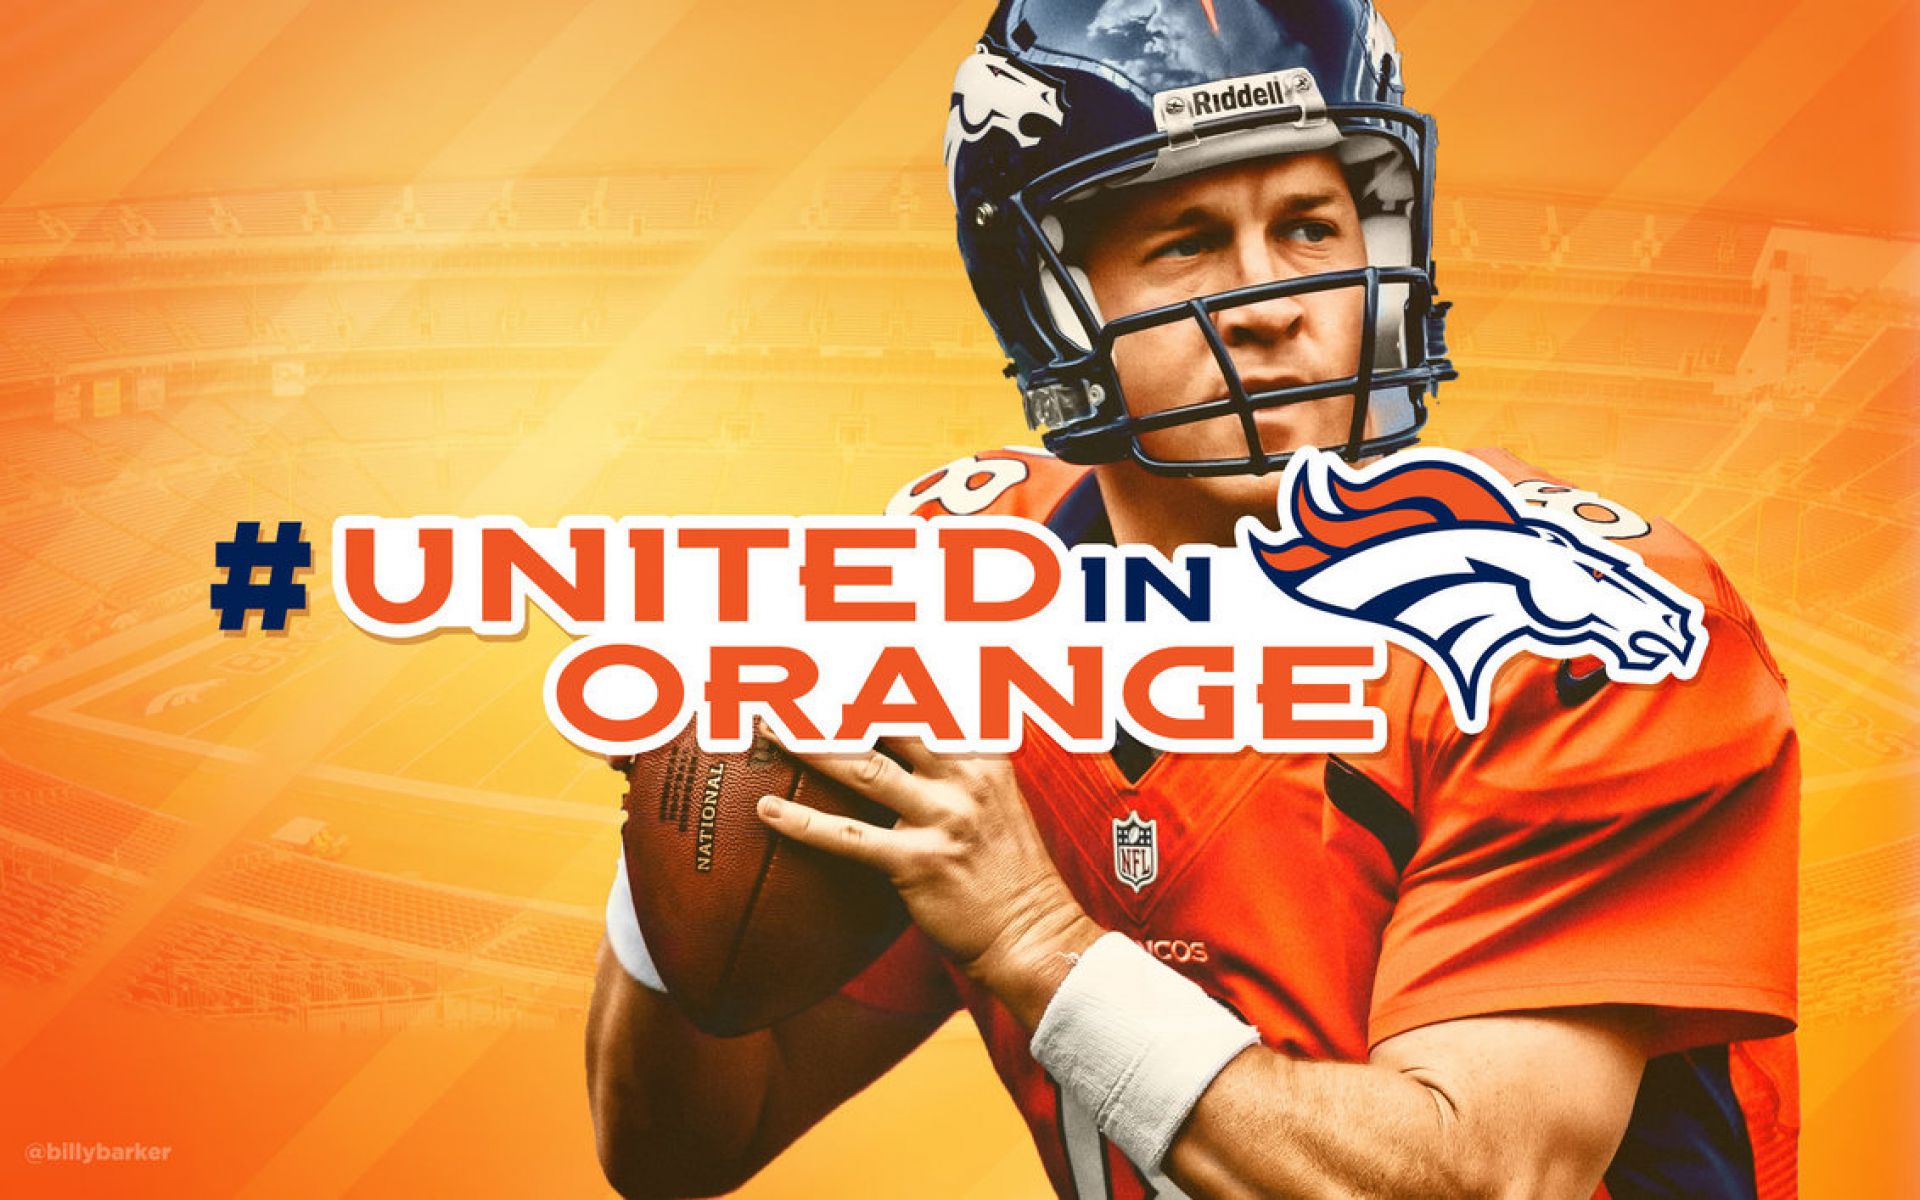 Peyton Manning Broncos Wallpaper - Peyton Manning Broncos Wallpaper 2014 - HD Wallpaper 